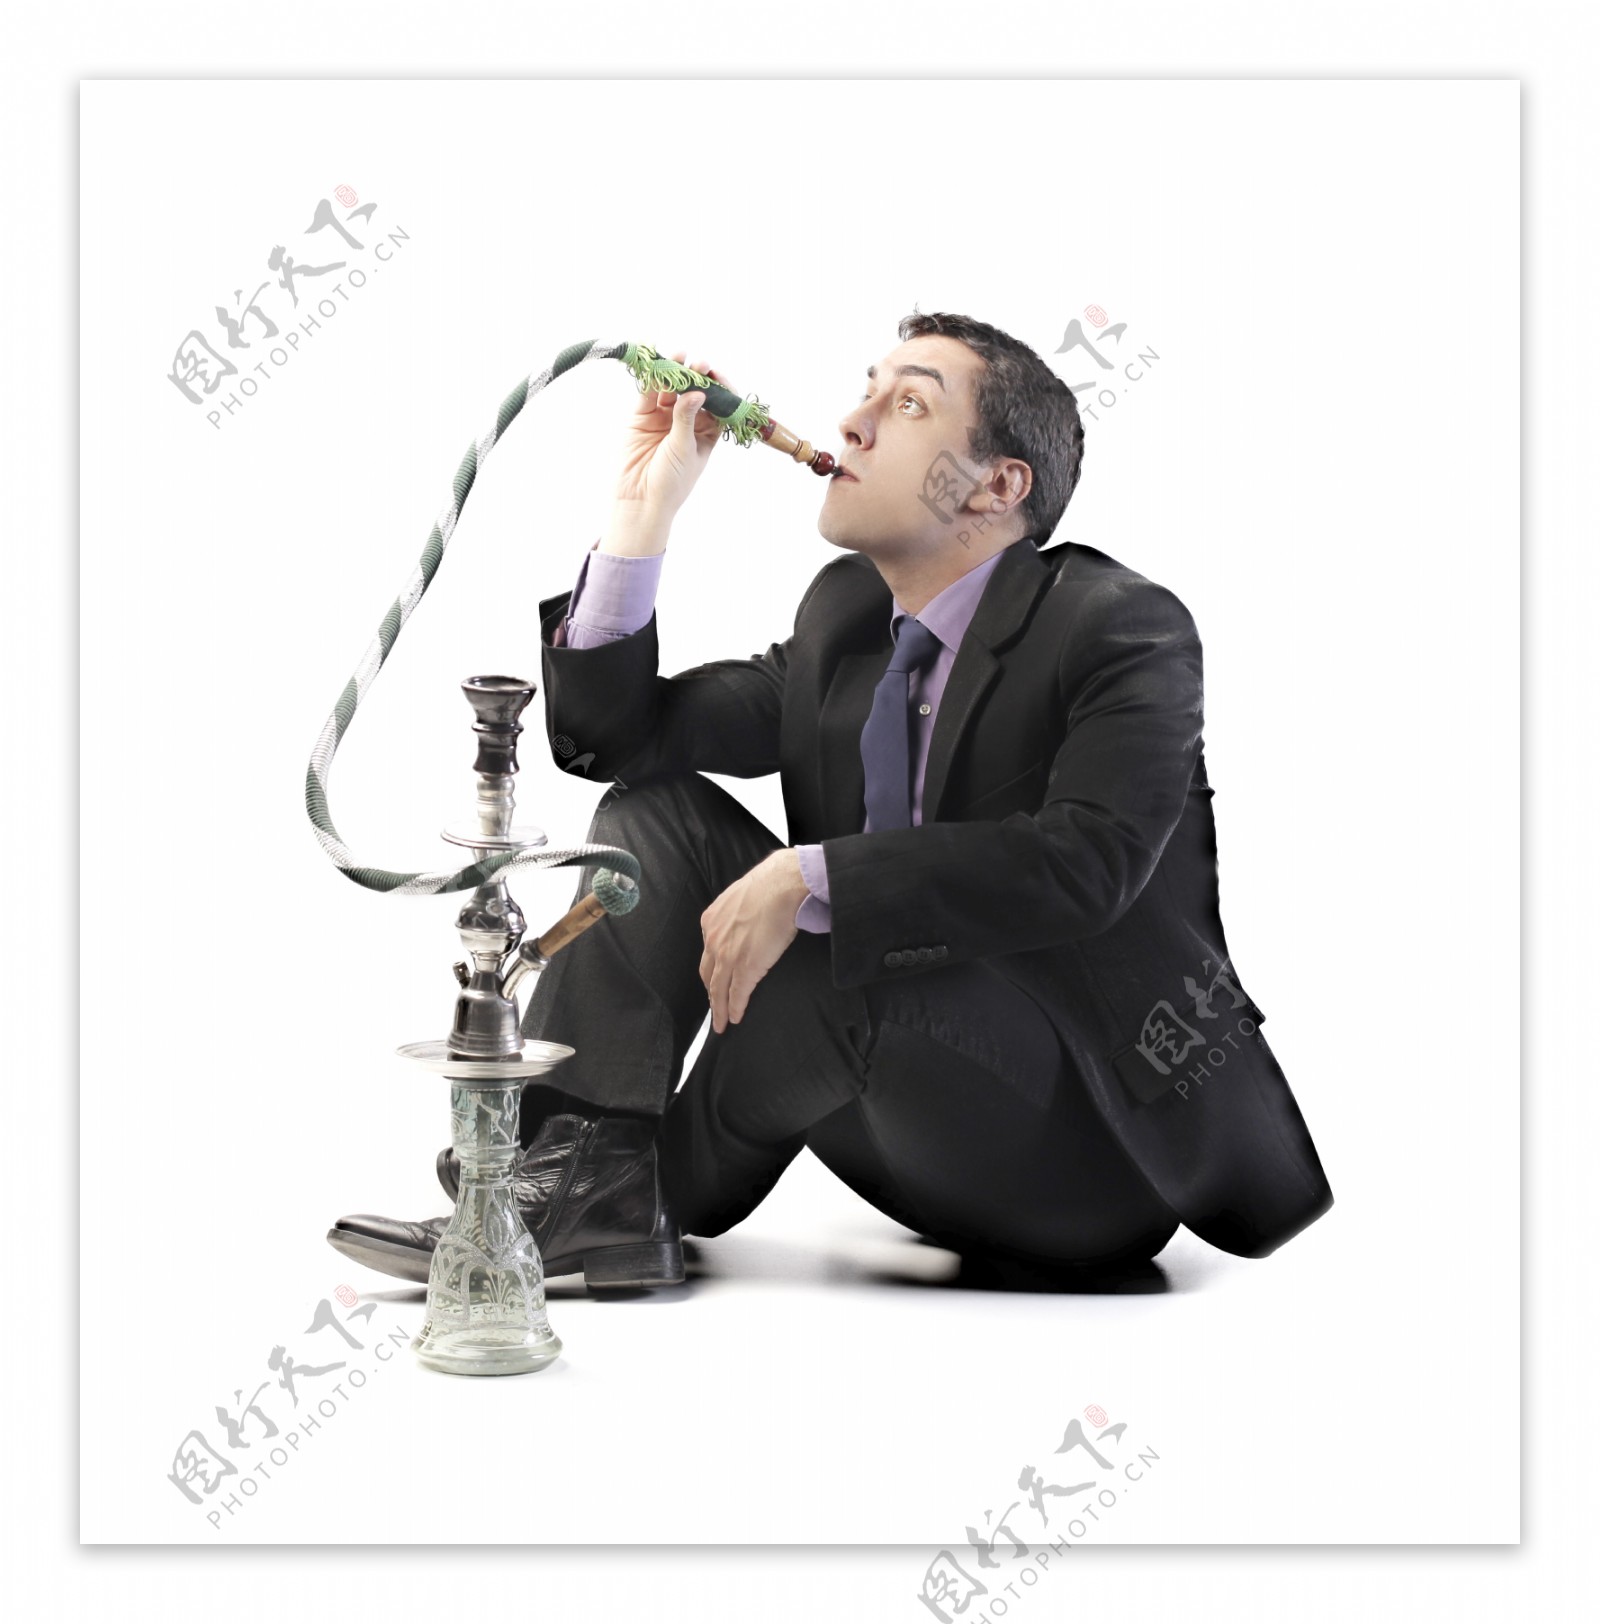 吸烟的职业男性图片